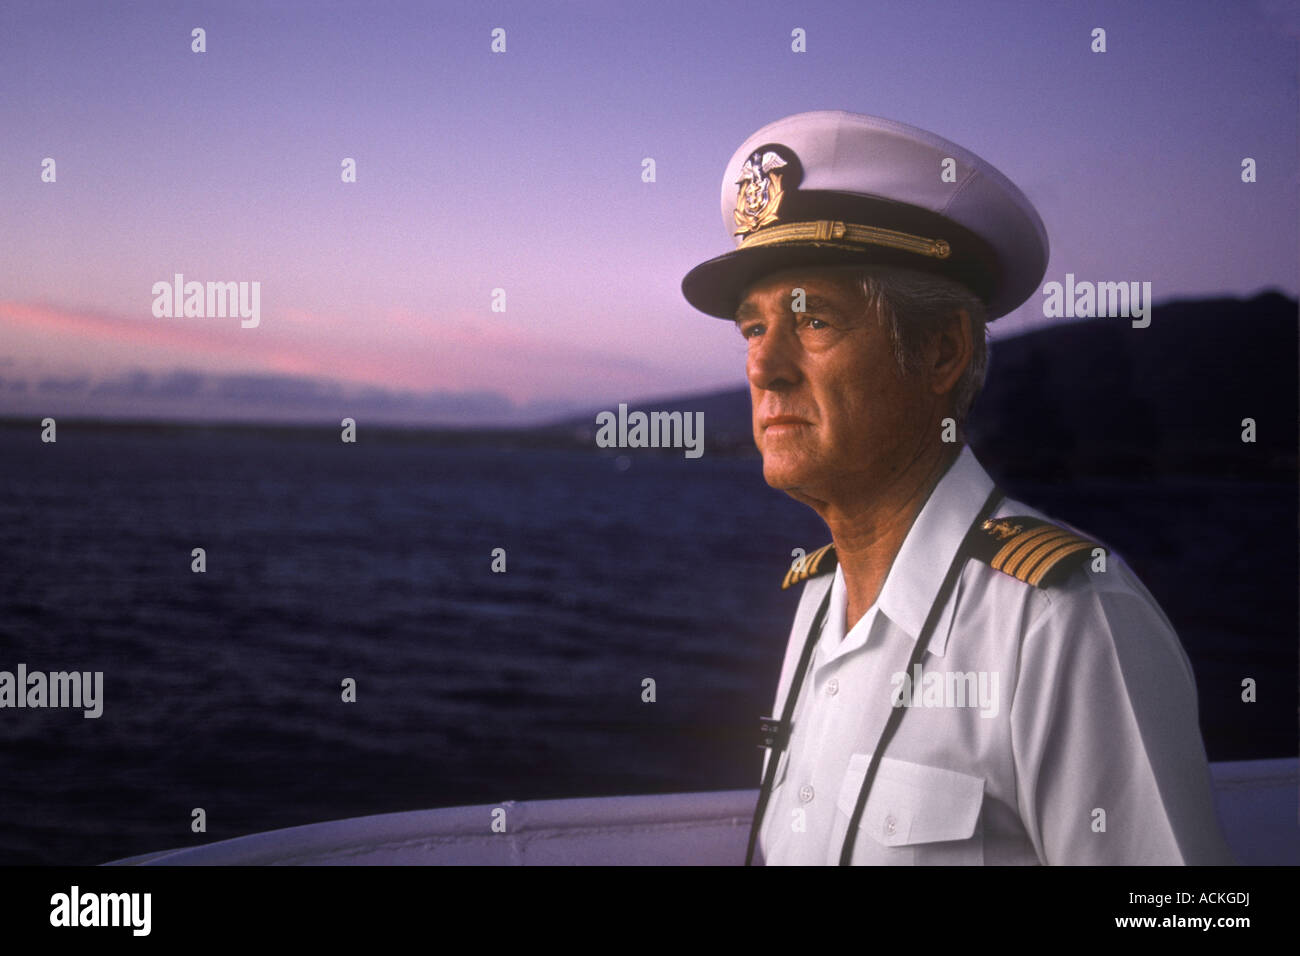 Ships Captain On Boat Bridge At Dawn, Hawaii USA Stock Photo